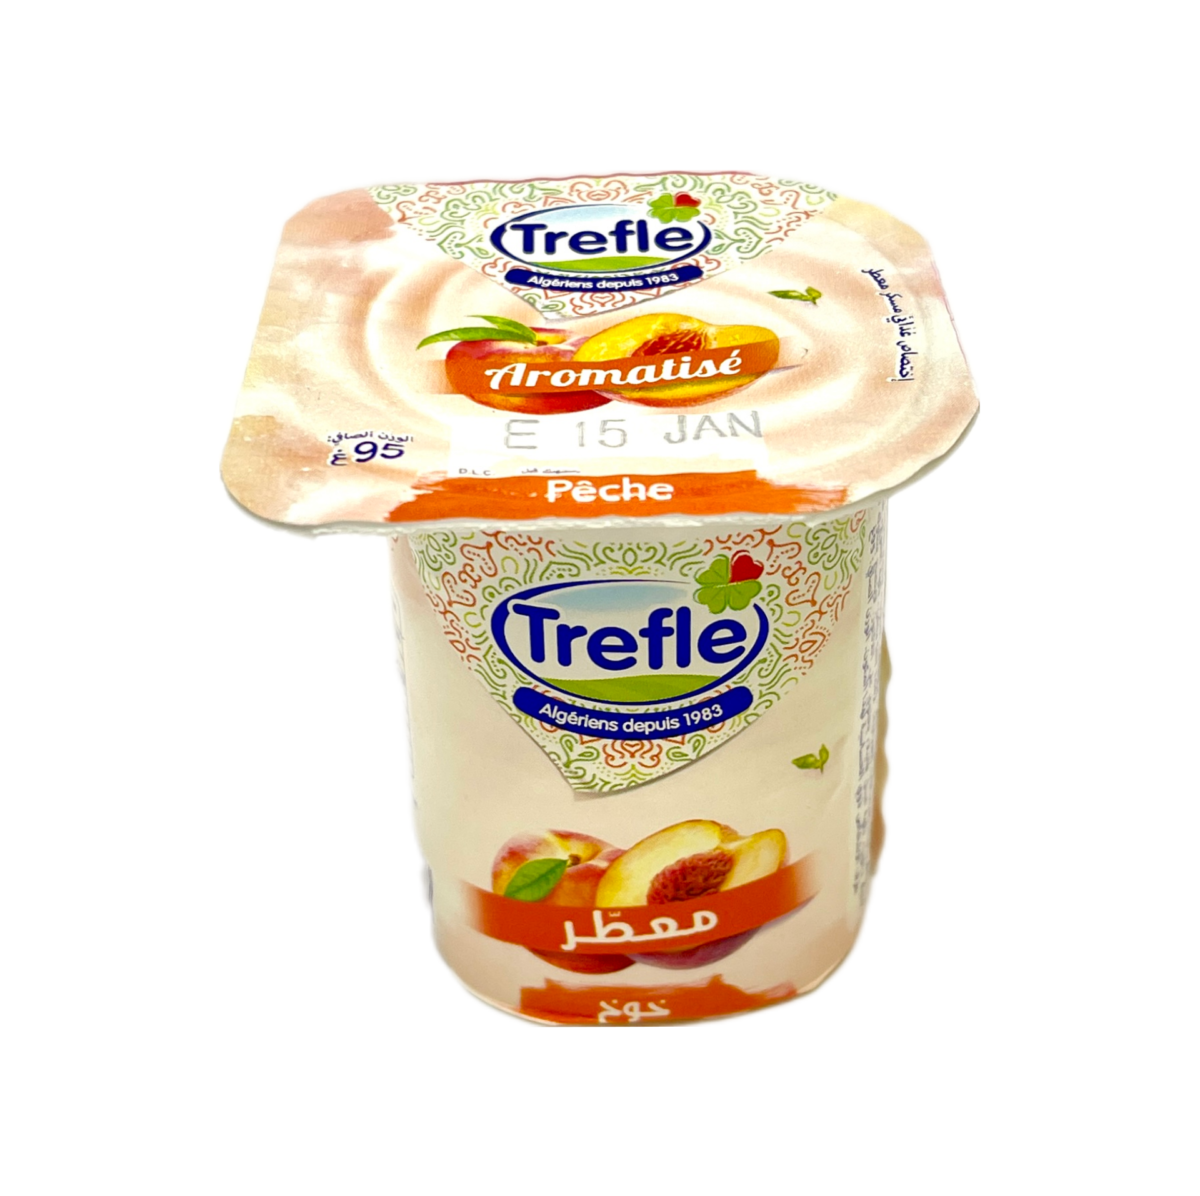 Yaourt Trefle Aromatisé Peche 95g